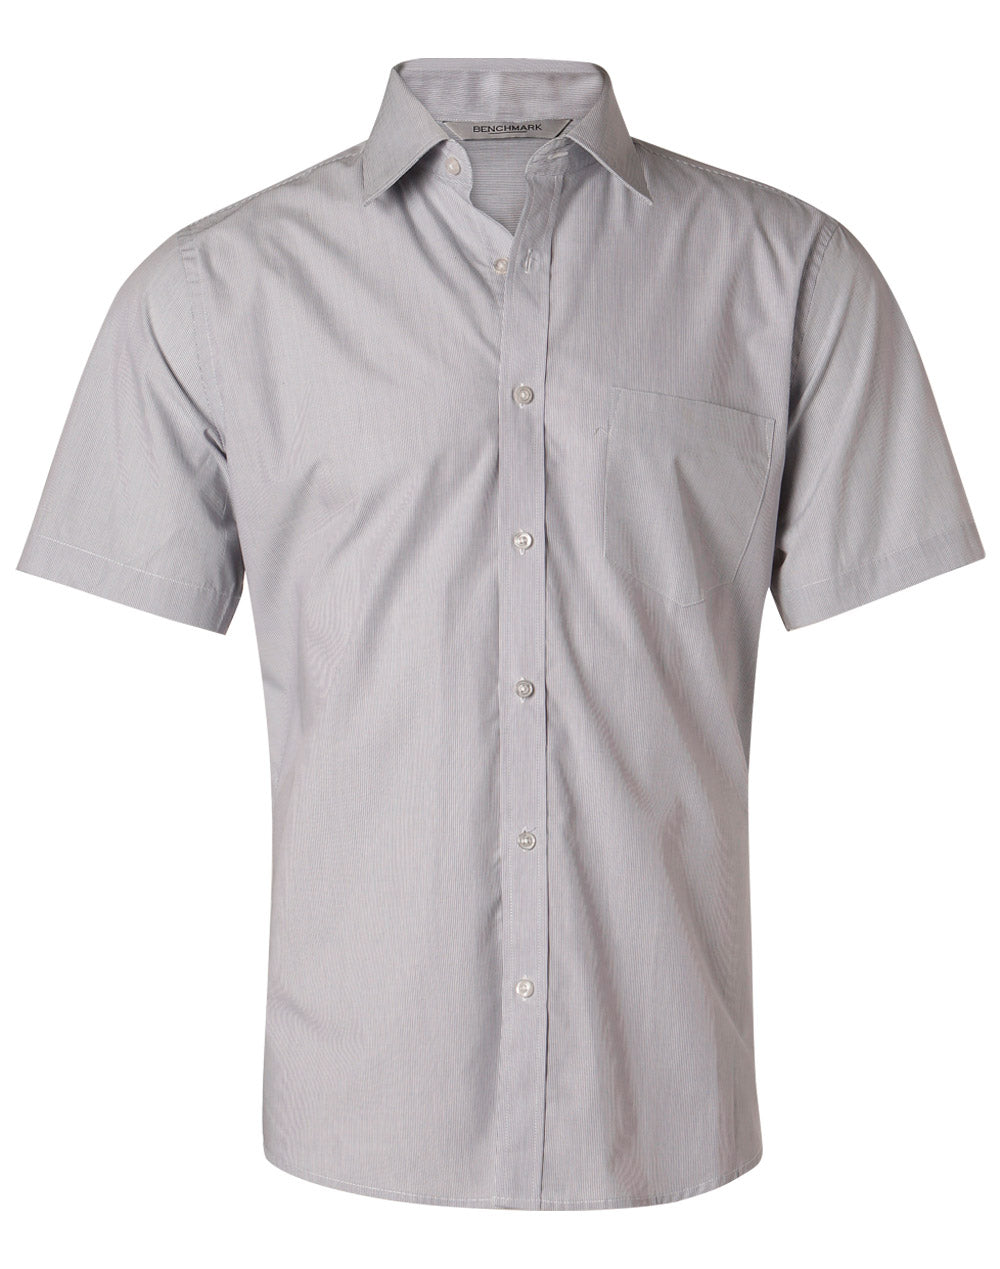 Benchmark M7211 Men's Fine Stripe Short Sleeve Shirt